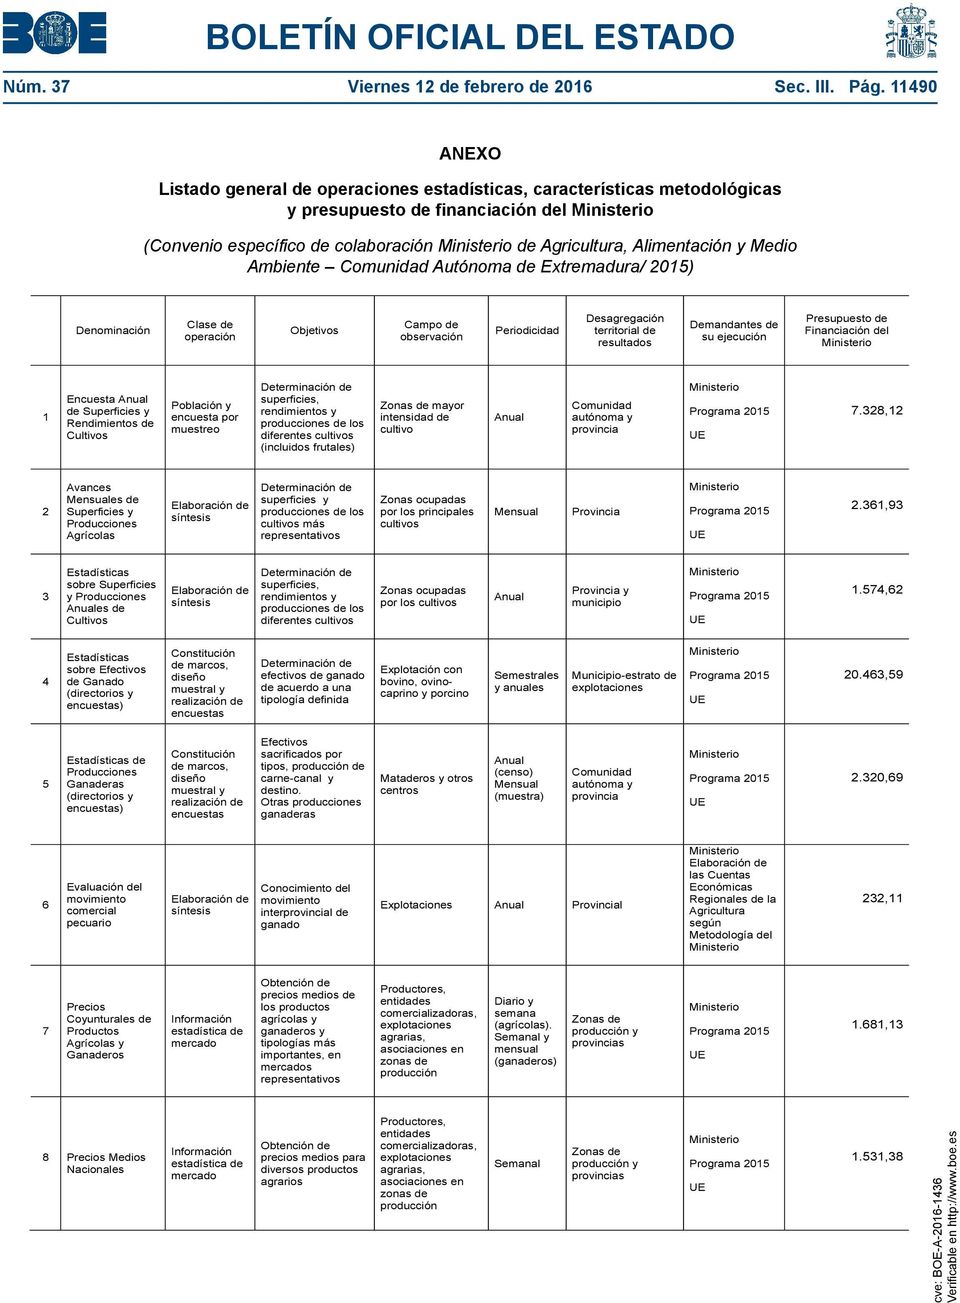 Ambiente Autónoma de Extremadura/ 2015) Denominación Clase de operación Objetivos Campo de observación Periodicidad Desagregación territorial de resultados Demandantes de su ejecución Presupuesto de